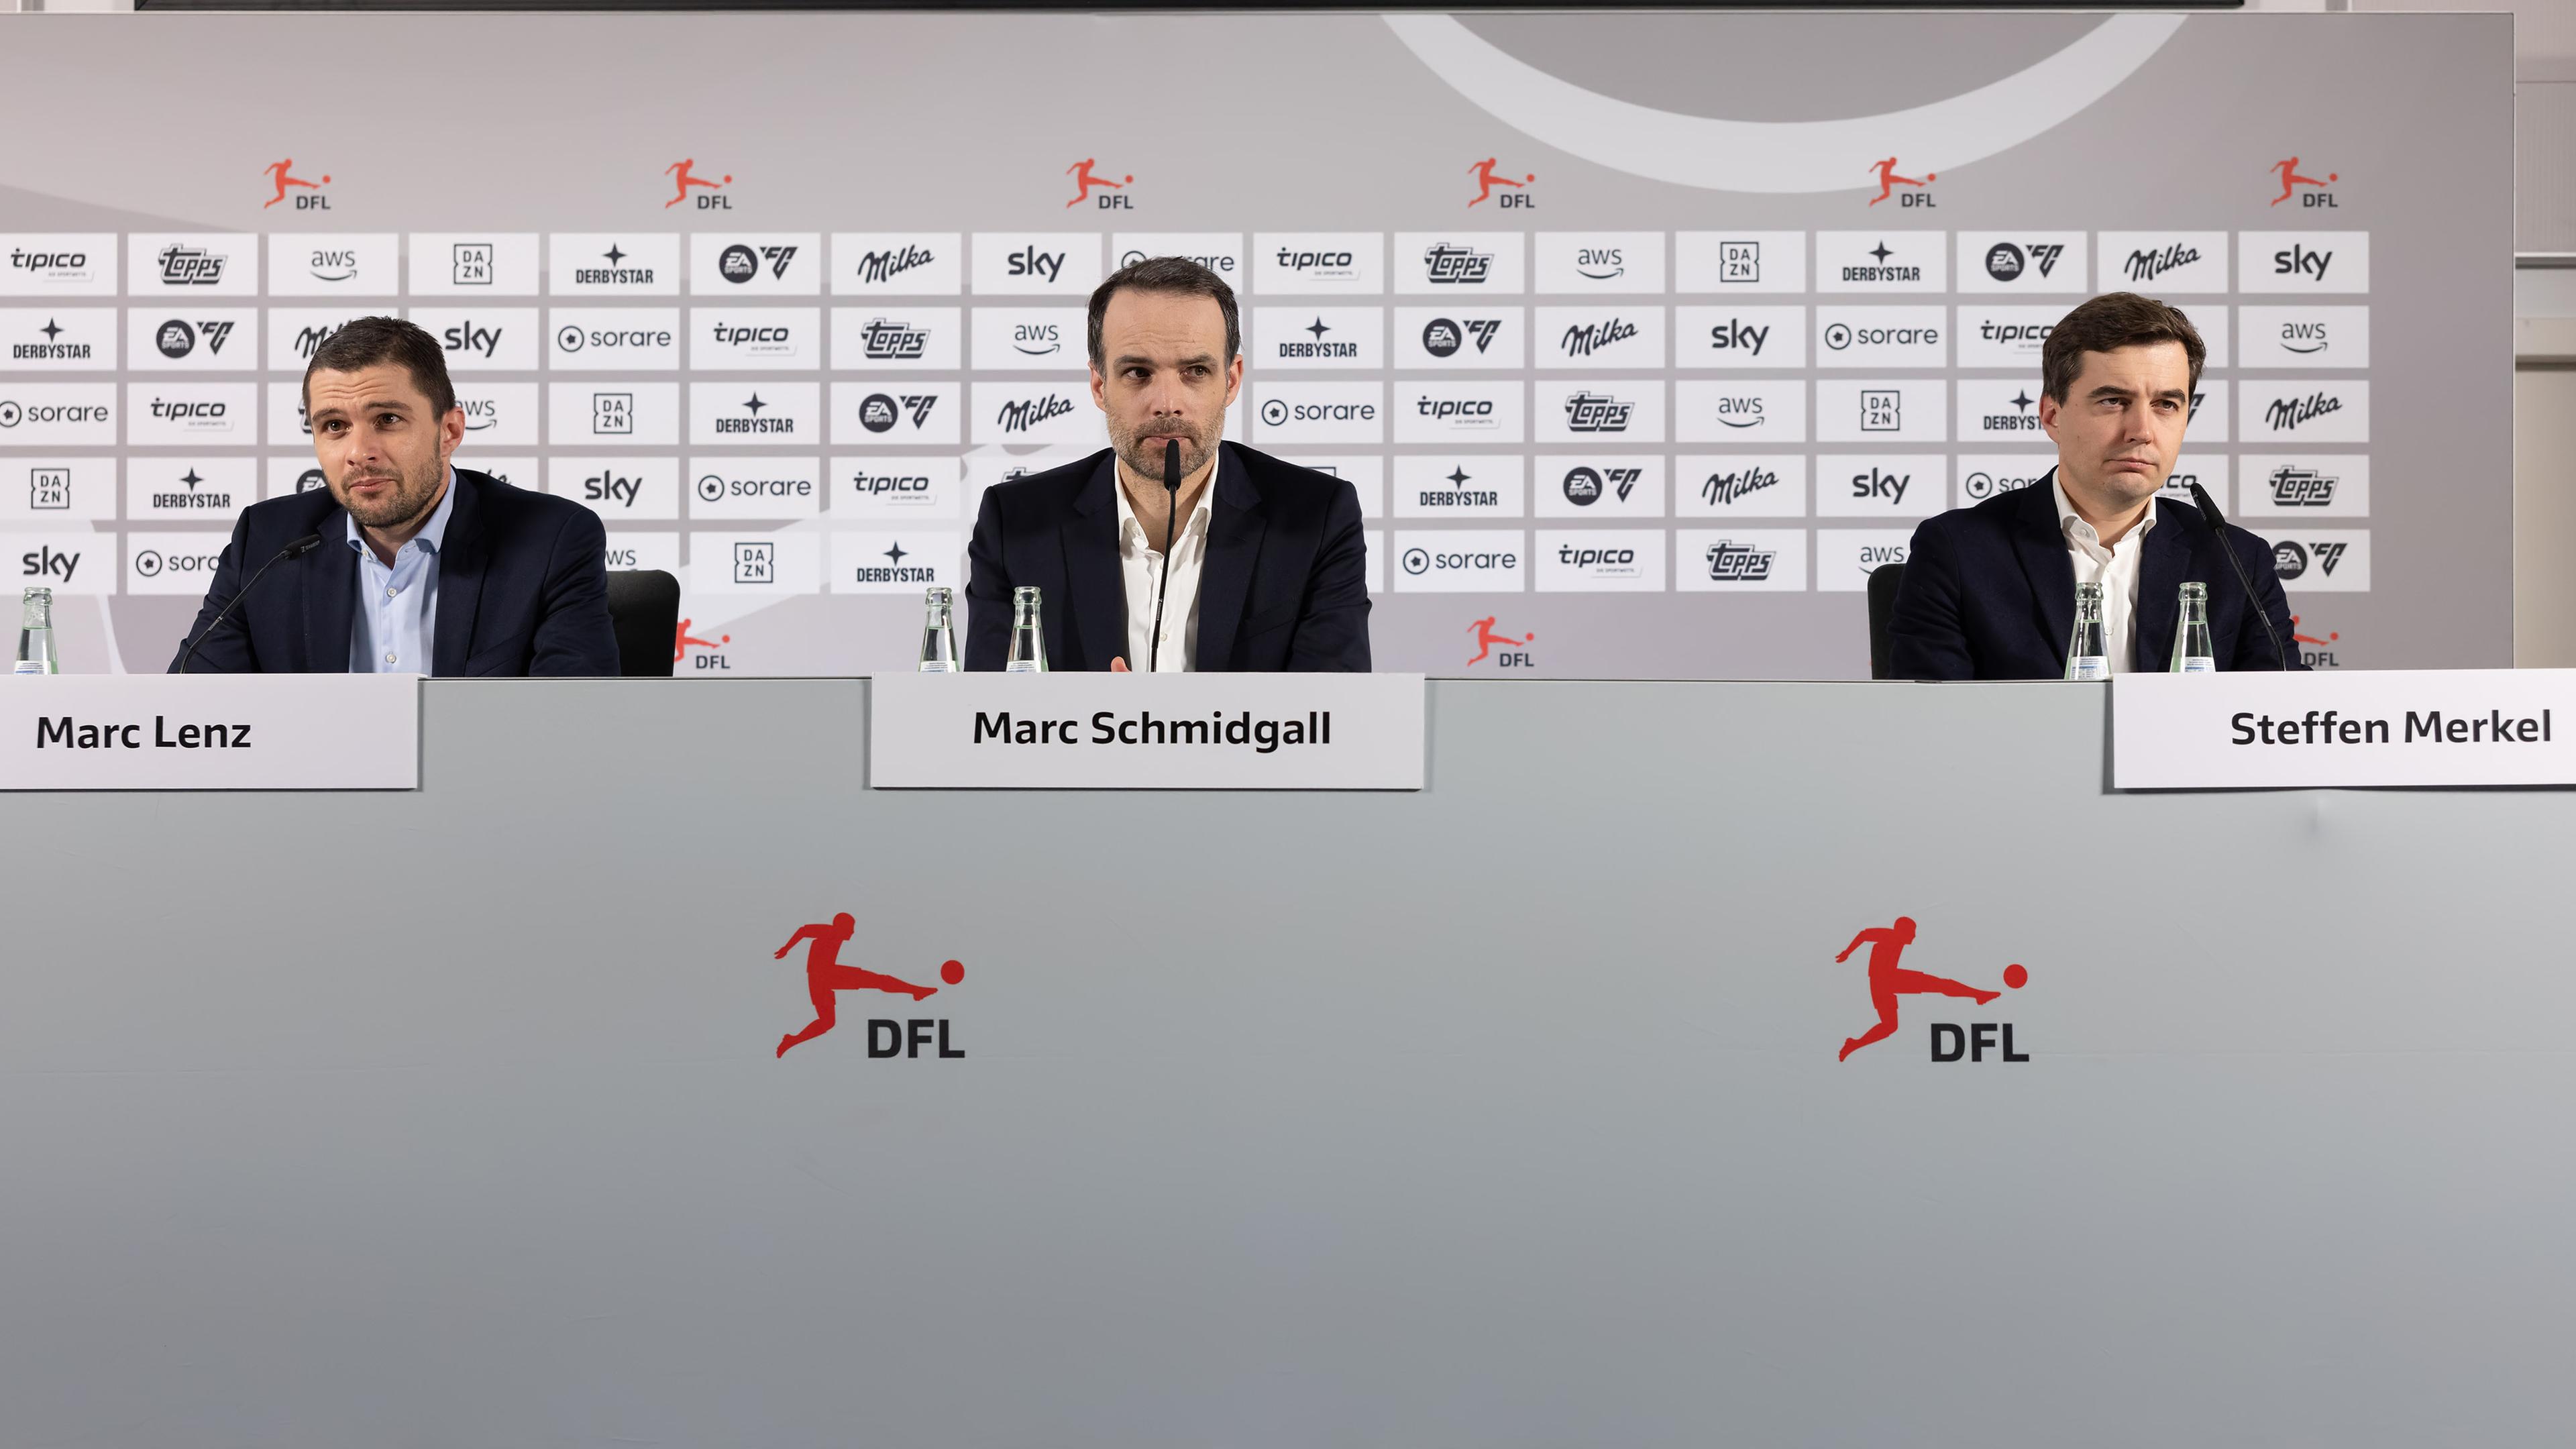 Hessen, Frankfurt/Main: Fußball: Mitgliederversammlung der Deutschen Fußball Liga (DFL), Pressekonferenz nach dem Ende der Versammlung. Marc Lenz (l) und Steffen Merkel (r), DFL-Geschäftsführer, sowie Marc Schmidgall (M), Leiter Medien und PR der DFL, auf der Pressekonferenz. 